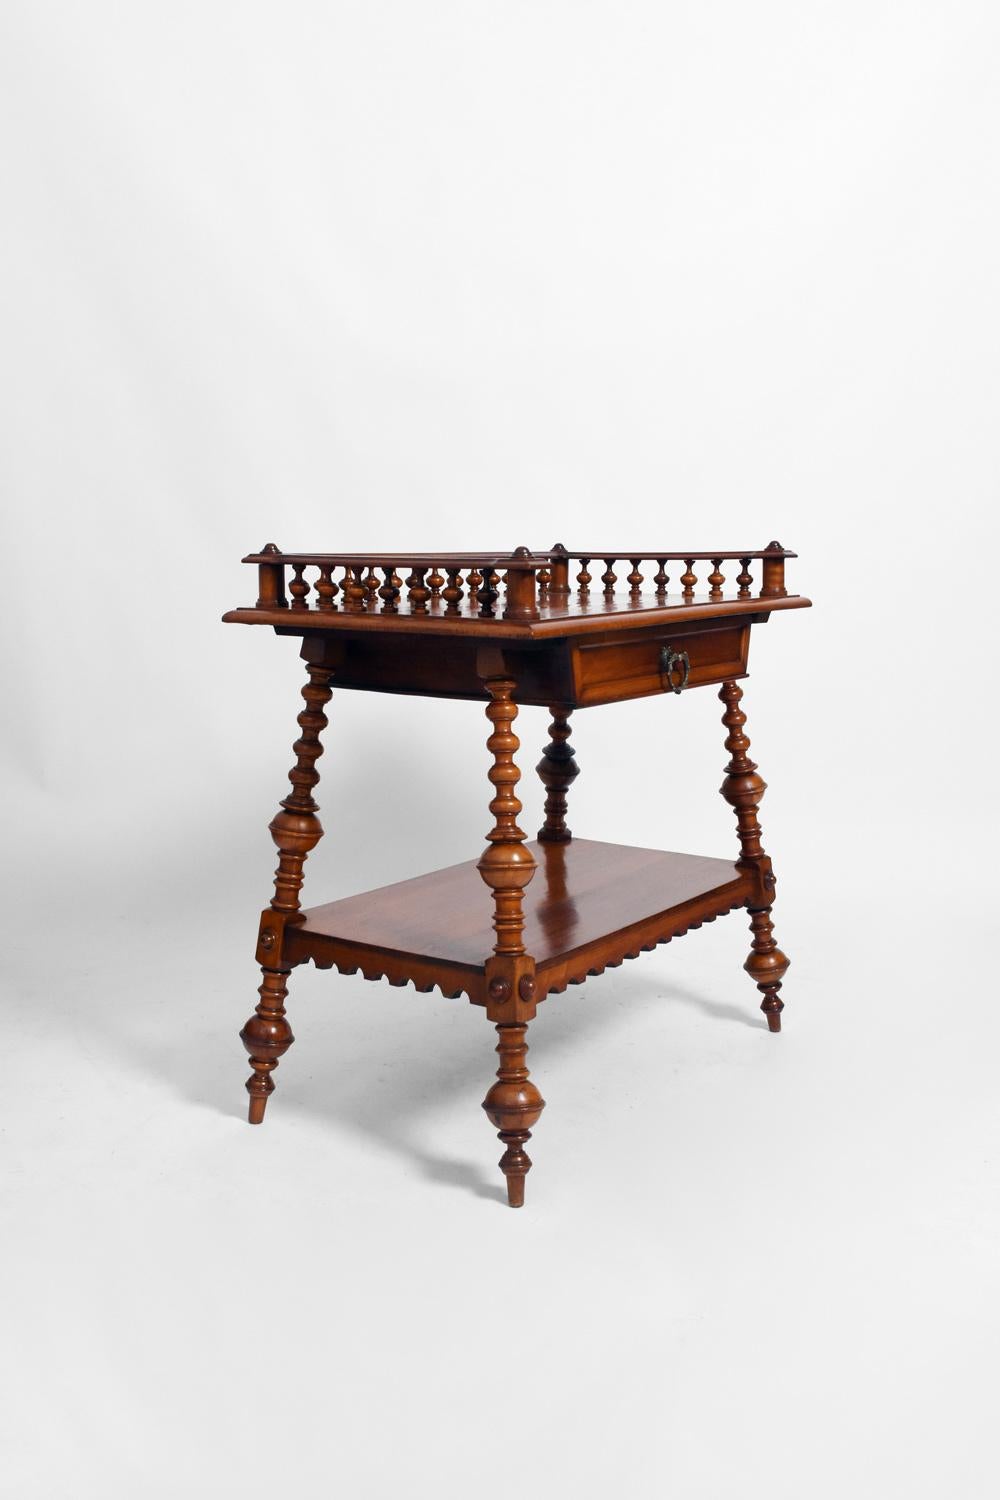 Table console en bois tourné reposant sur quatre pieds fuselés, un tiroir en frise sous le plateau. Angleterre, fin du XIXe siècle.